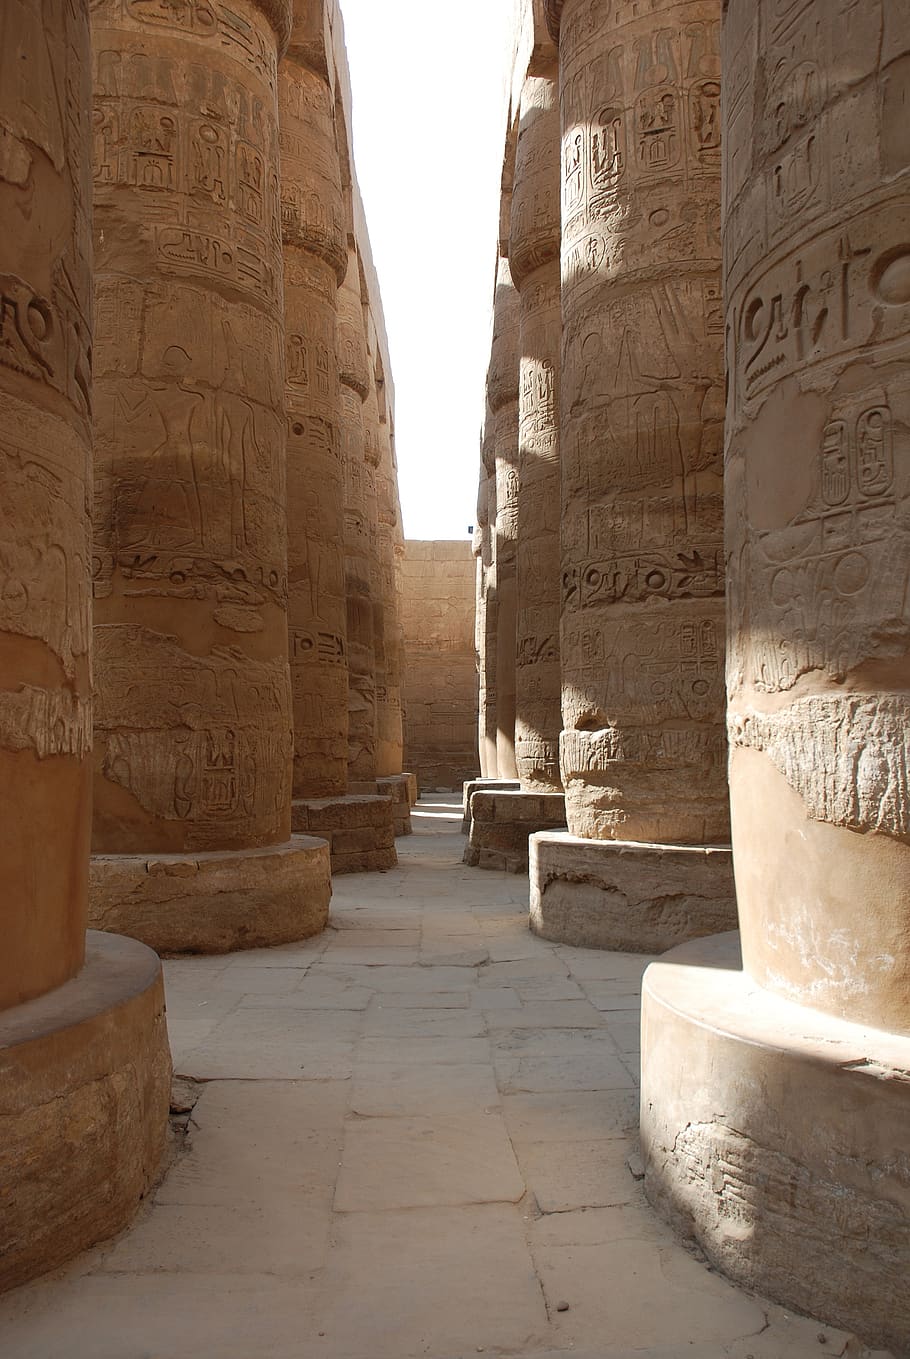 Egipto, antigua, arqueología, Luxor, Karnak, templo, monumentos, columnas, histórico, escultura